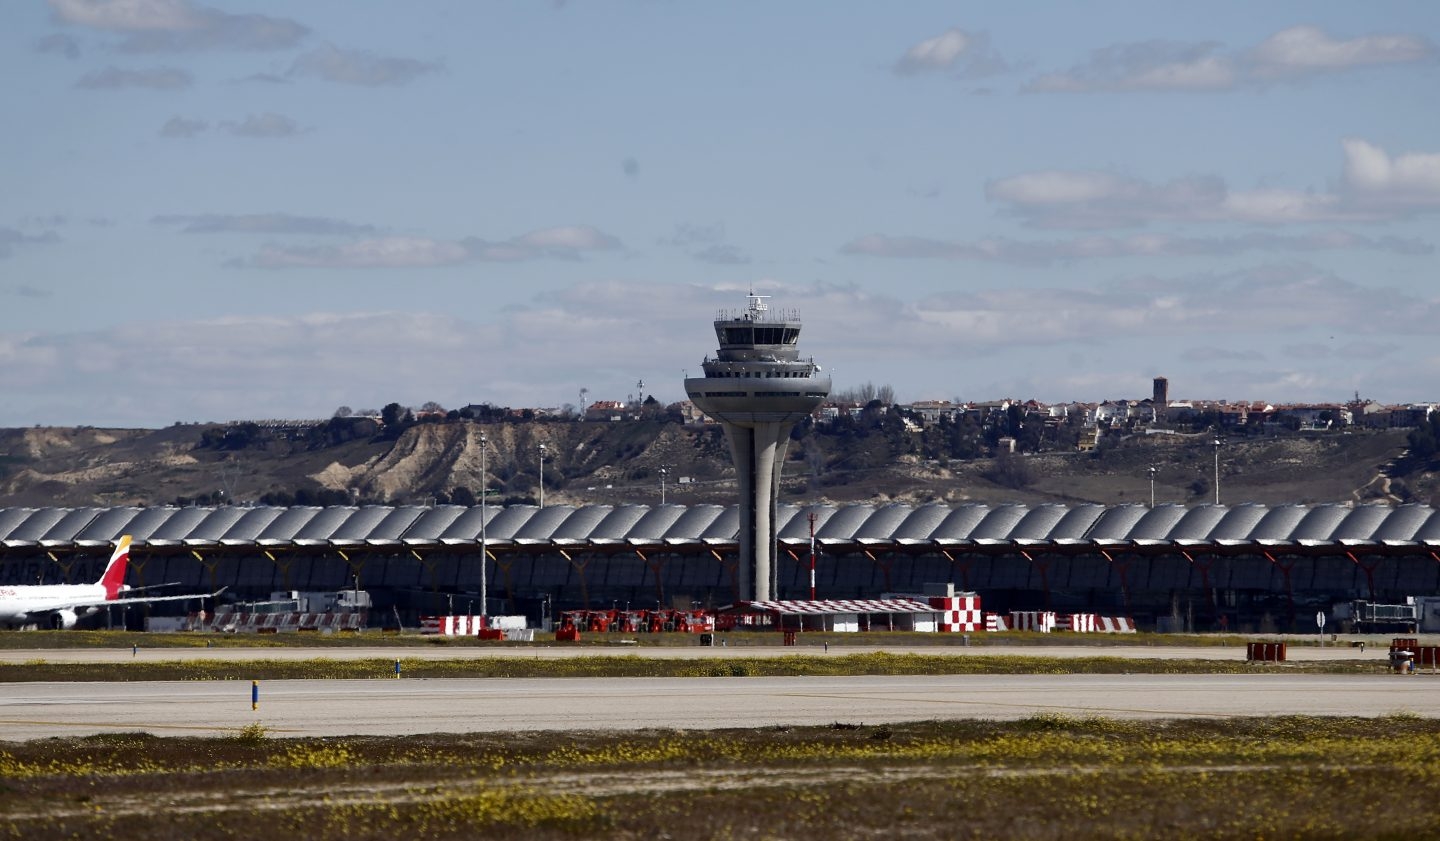 Torre de control en la Terminal 4 del Aeropuerto de Madrid Barajas-Adolfo Suárez